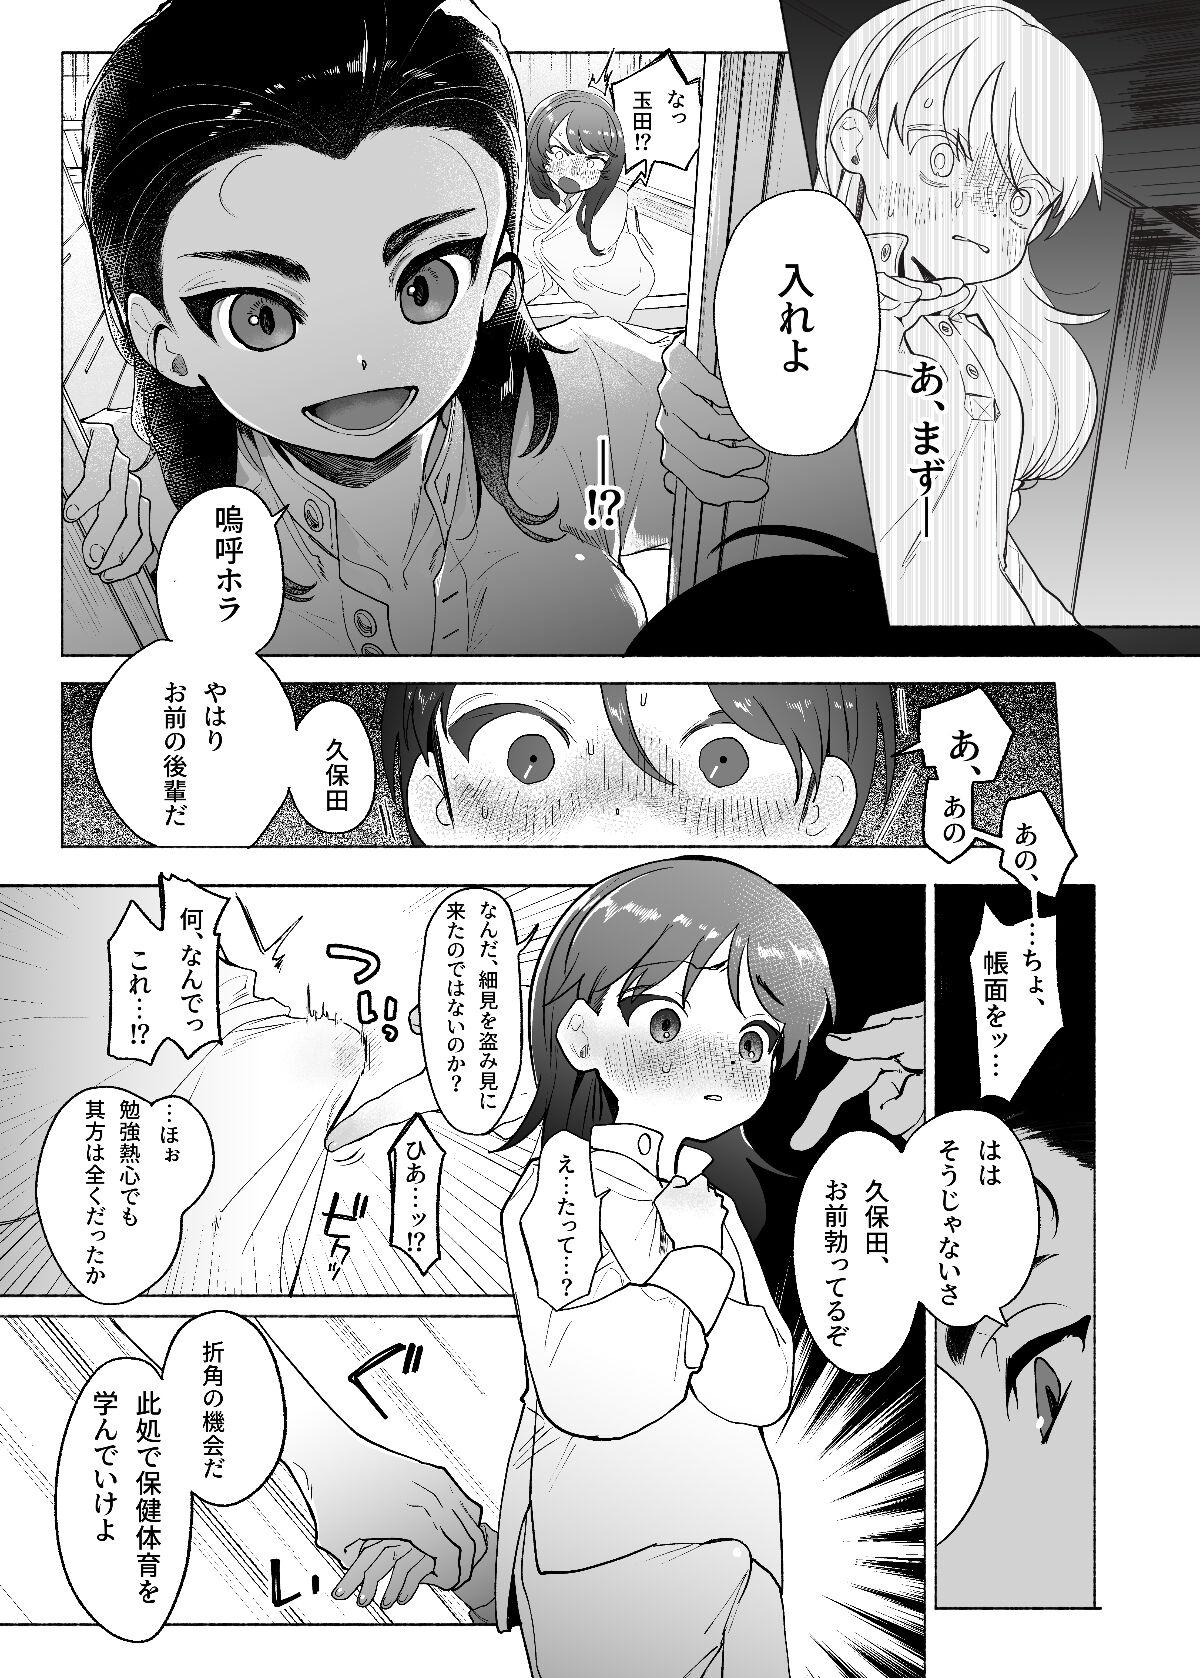 Porno 18 Ah, Watashi no Senpai Dono - Girls und panzer Nudes - Page 8